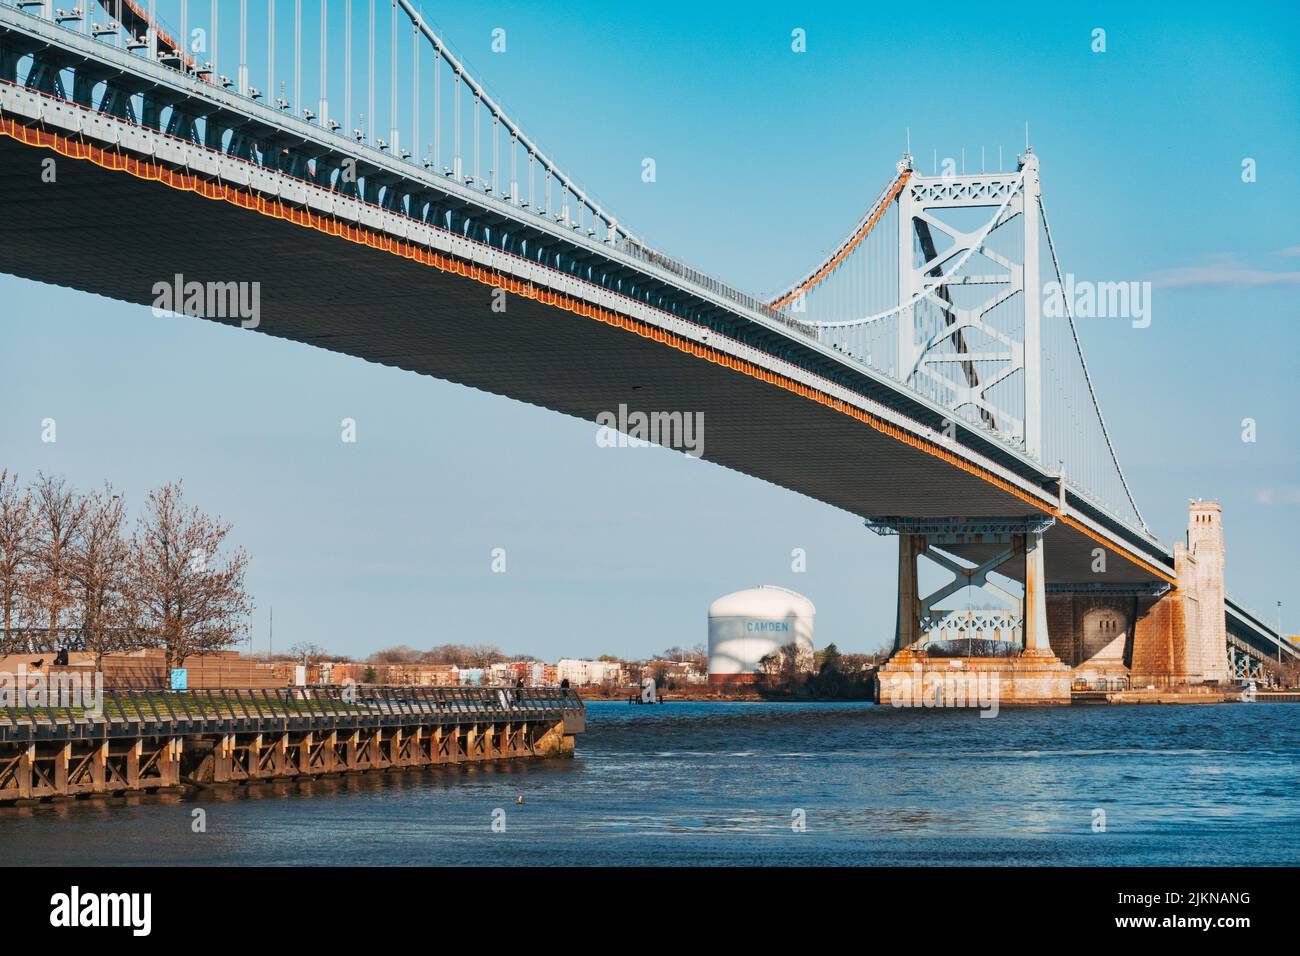 The Benjamin Franklin Bridge over the Delaware River seen from the Philadelphia side Stock Photo